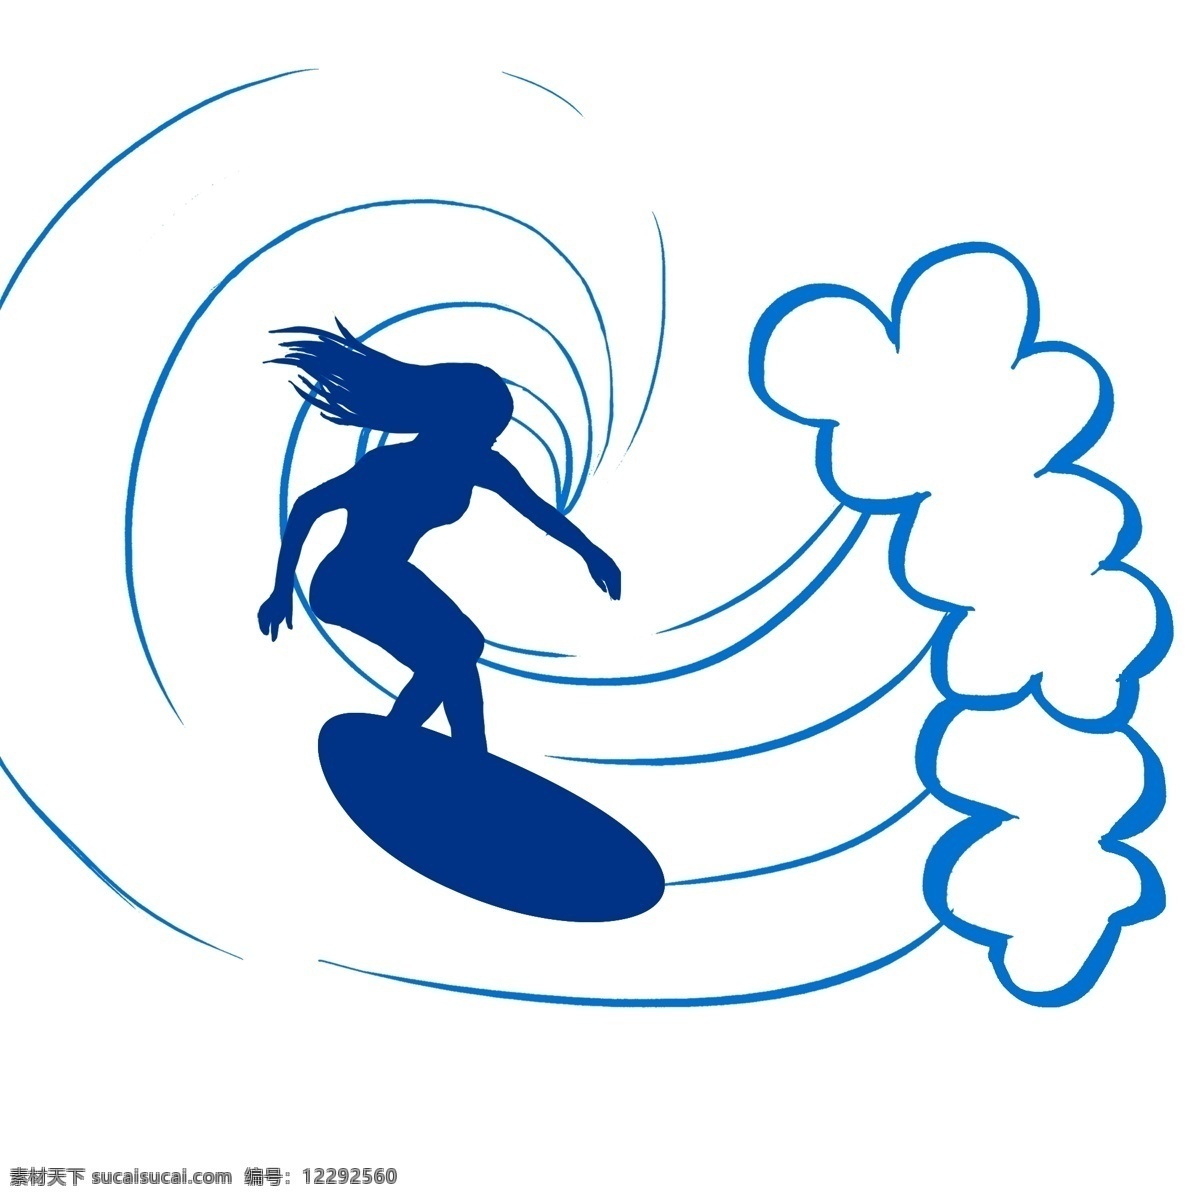 夏日 海洋 蓝色 浪花 女人 冲浪 手绘 夏季旅游 海上冲浪 蓝色浪花 女人冲浪 激情 暑期冲浪 浪花一朵朵